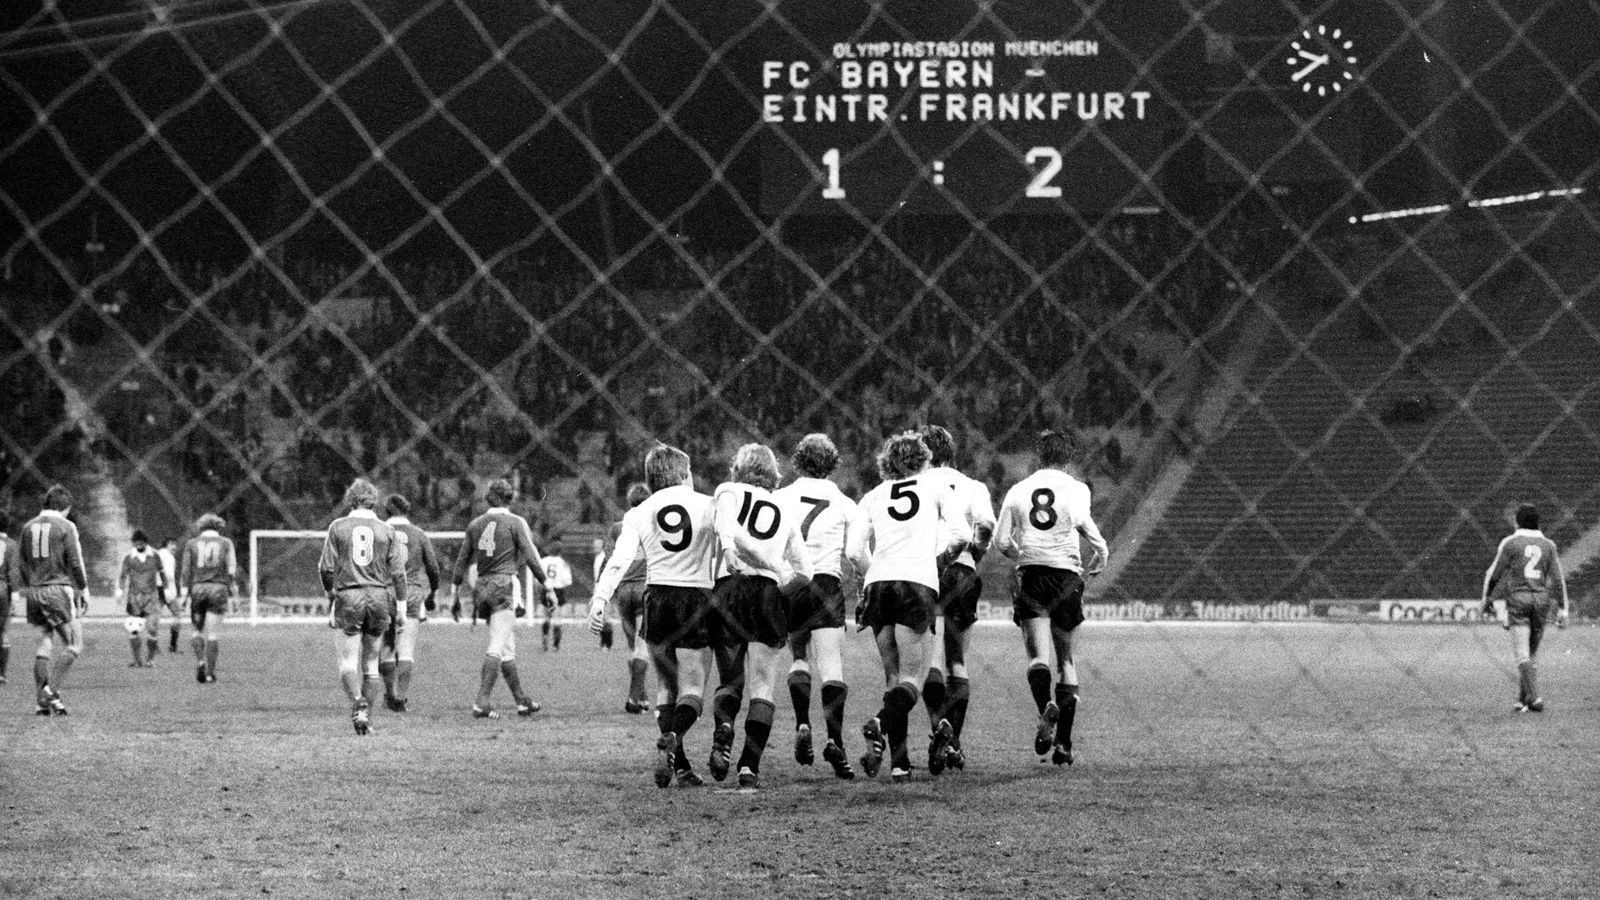 
                <strong>FCB-SGE-1977-UEFA-Cup</strong><br>
                UEFA-Pokal, 1977/78: Eintracht Frankfurt - Bayern München 4:0 / 2:1 - Klare SacheEs war die Saison, in der die Bayern ihre schlechteste Bundesliga-Platzierung überhaupt einfuhren. Am Ende stand Rang 12. Auch international lief es nicht rund. Im Achtelfinale des UEFA-Cups blieben die Bayern chancenlos. Schon nach dem 0:4 im Hinspiel (Tore: Grabowski, Hölzenbein, Kraus und Skala) war die Sache entschieden. Auch das Rückspiel gewann die Eintracht (Bild). 
              